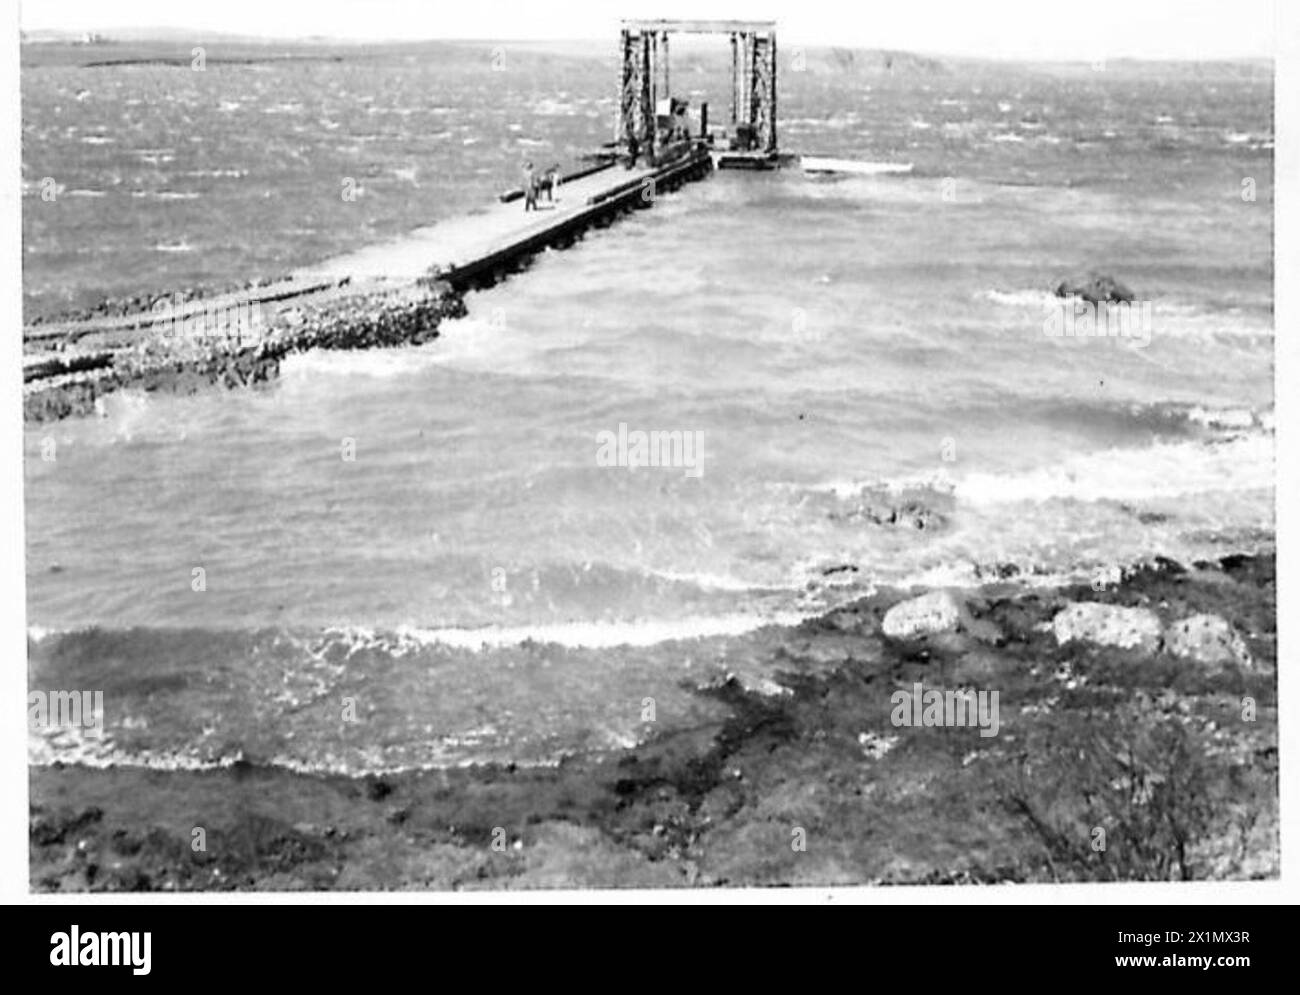 INCARICO SPECIALE PER D.TN. - 'V' Trestle Pier Head in alto mare durante la gale, British Army Foto Stock